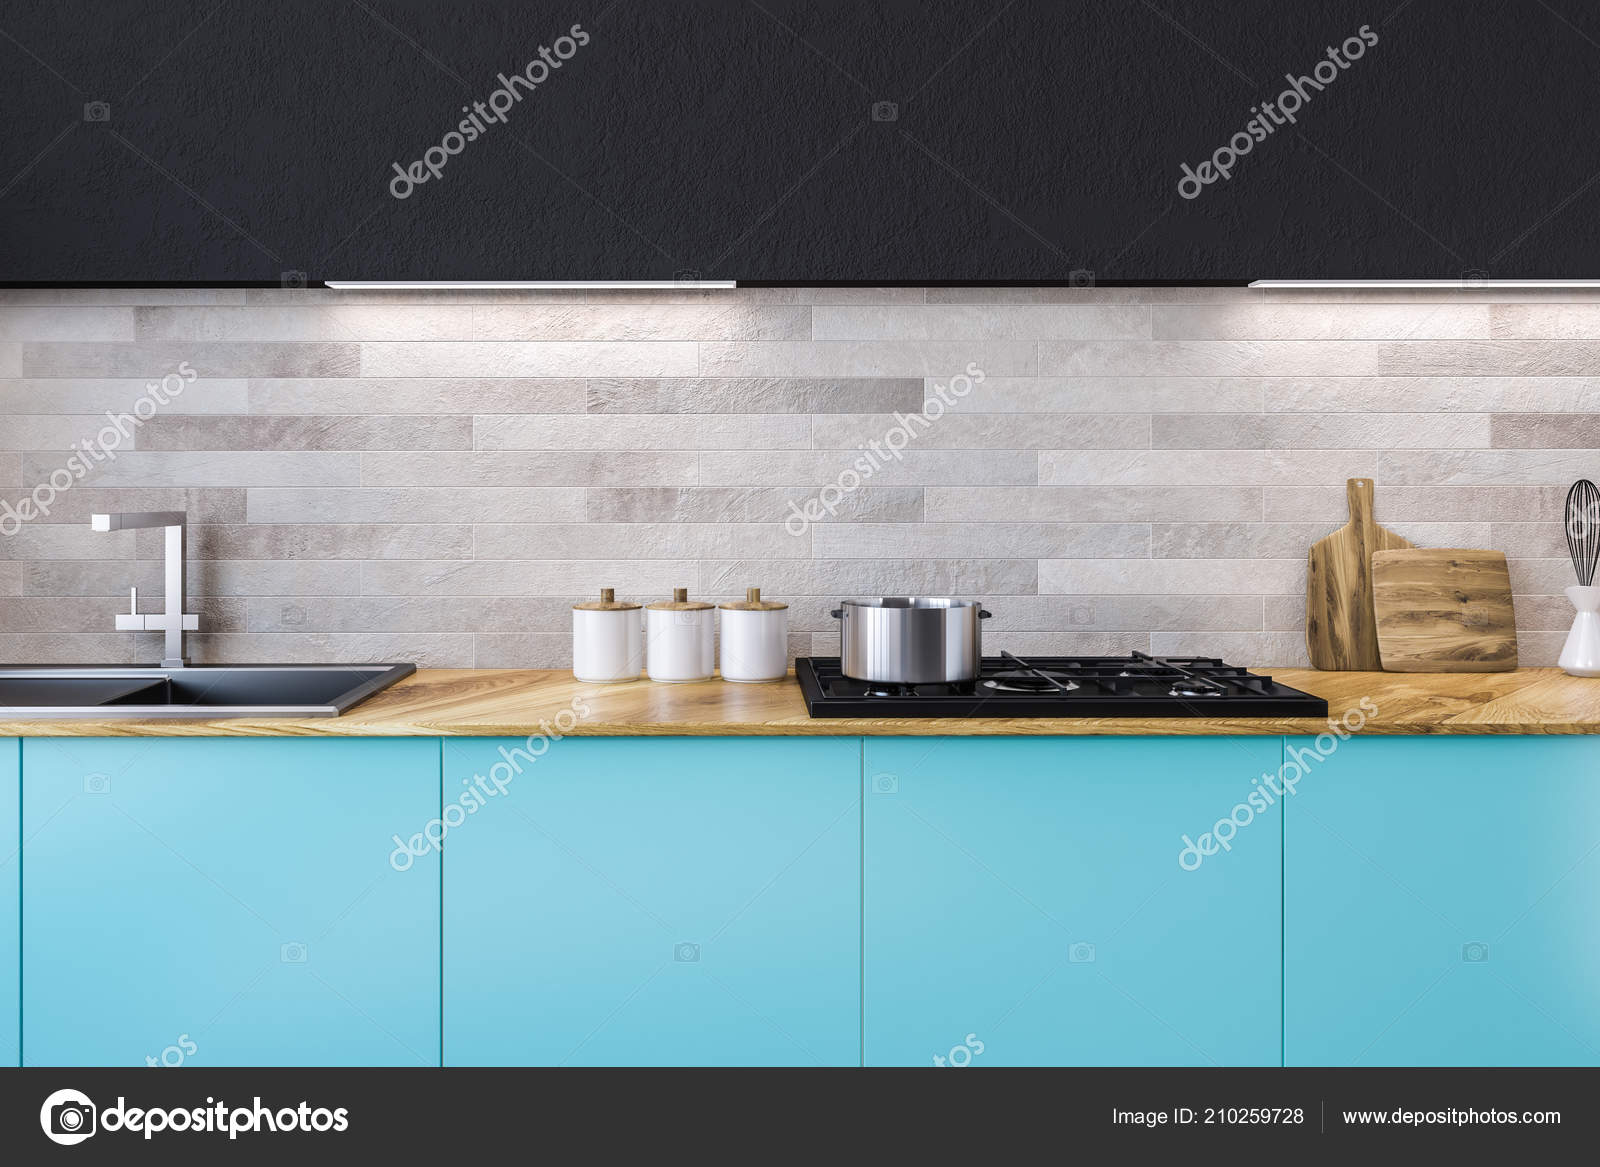 Close Kitchen Sink Built Blue Countertops Kitchen Interior